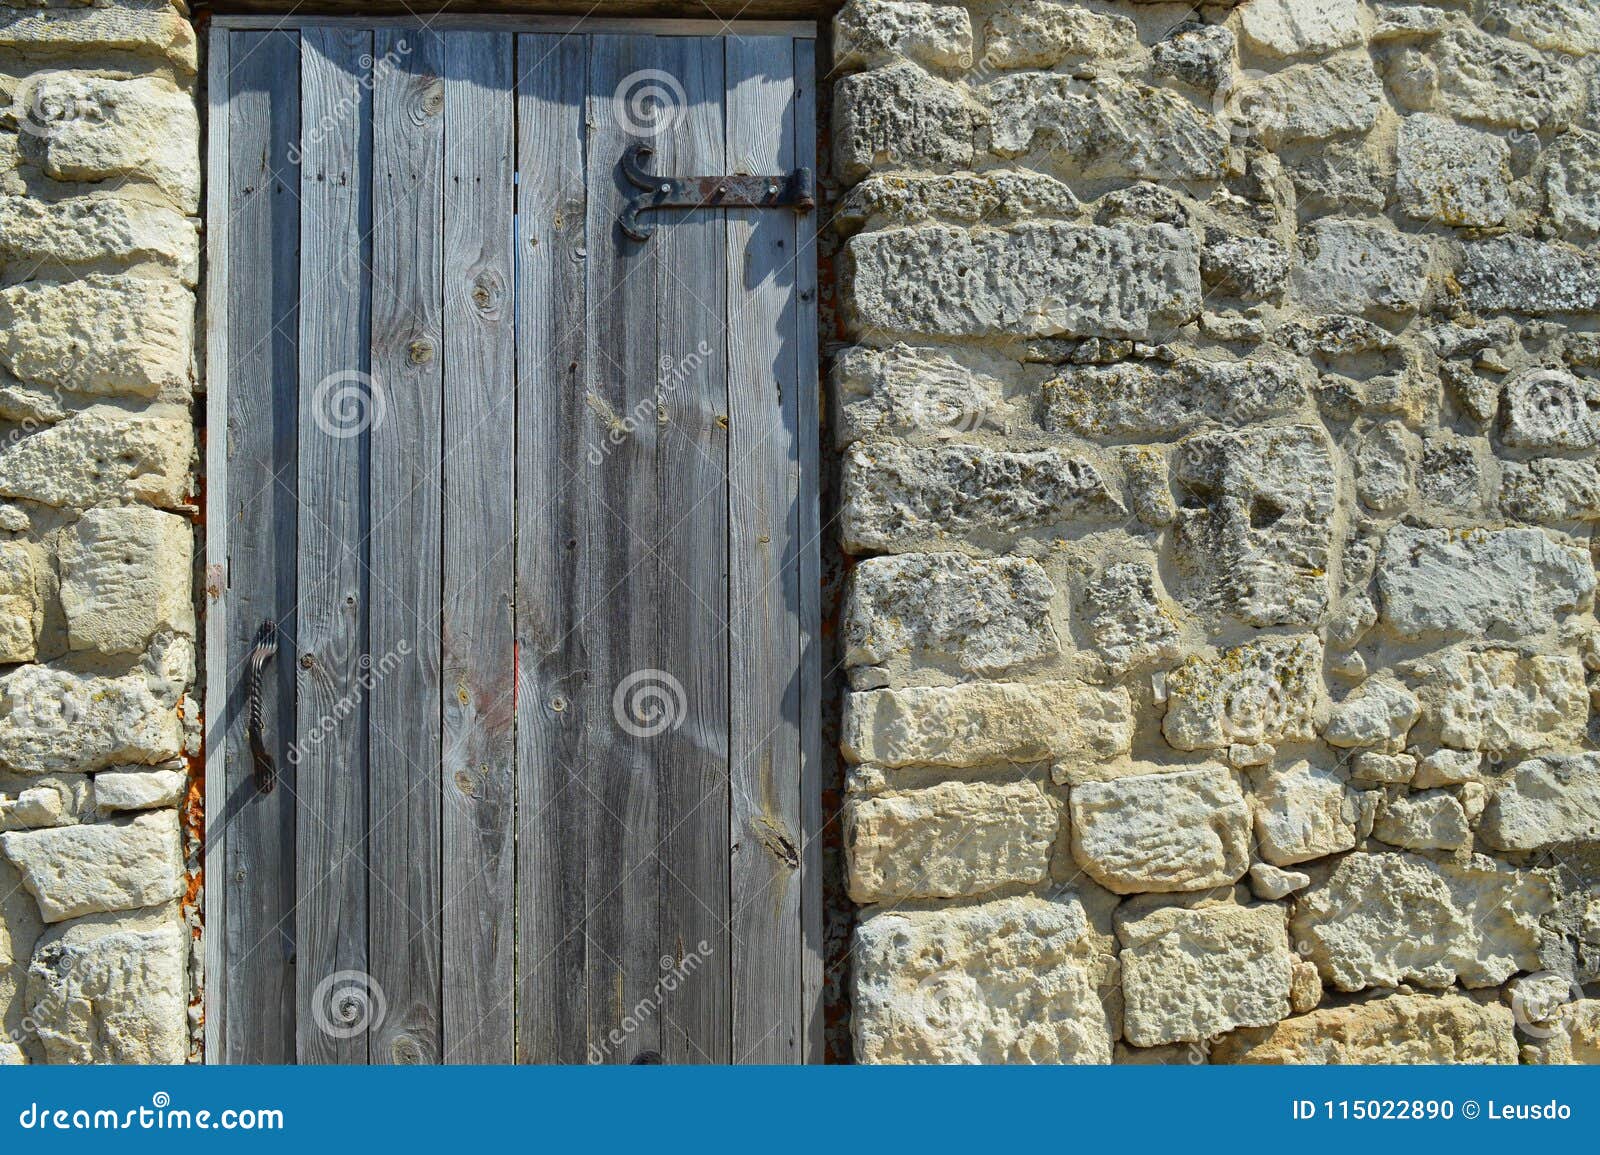 Drewniany drzwi z metali zawiasami instaluje w ścianie antyczny kamień - co kryje ono?